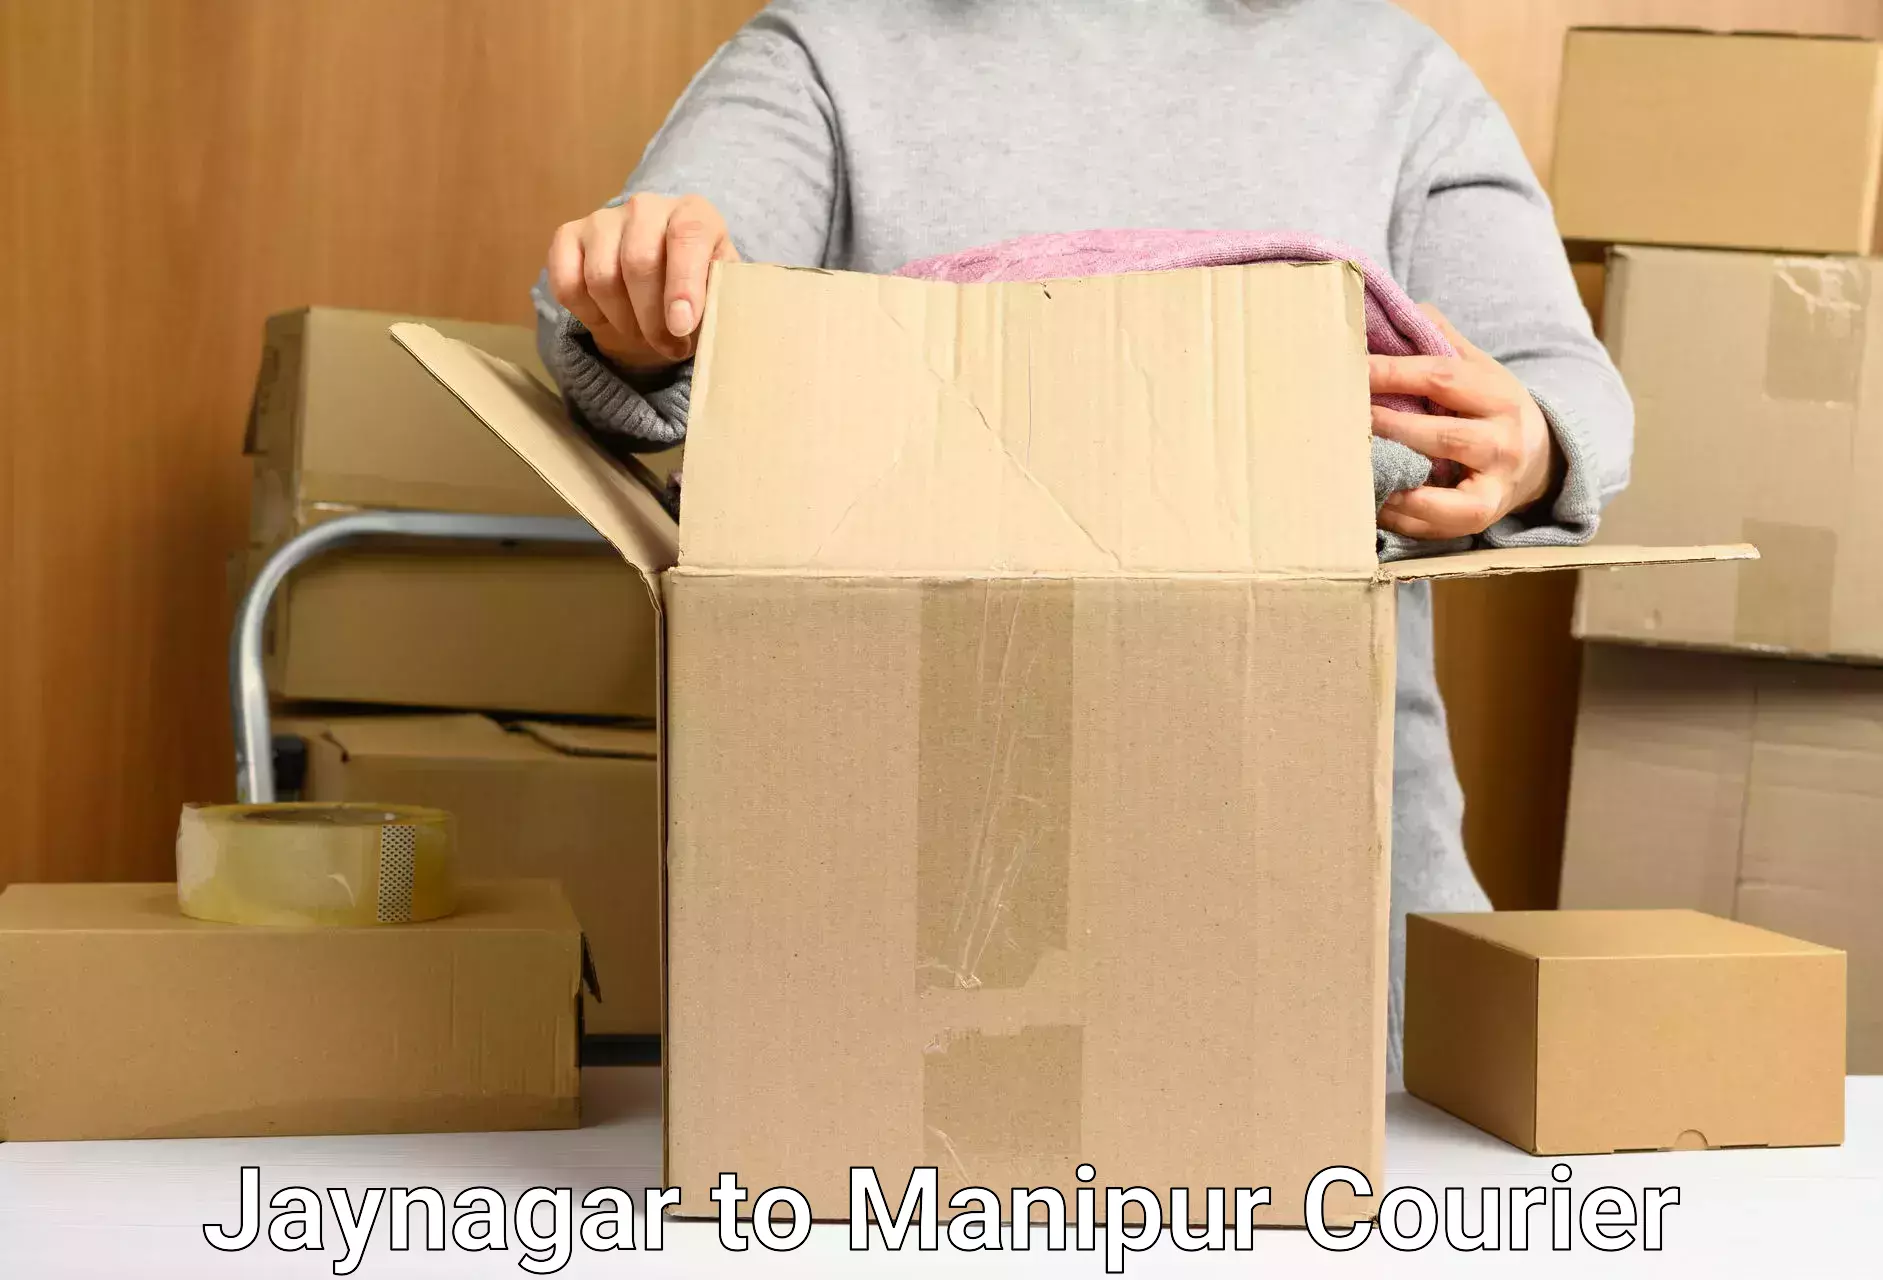 Custom courier packaging Jaynagar to Manipur